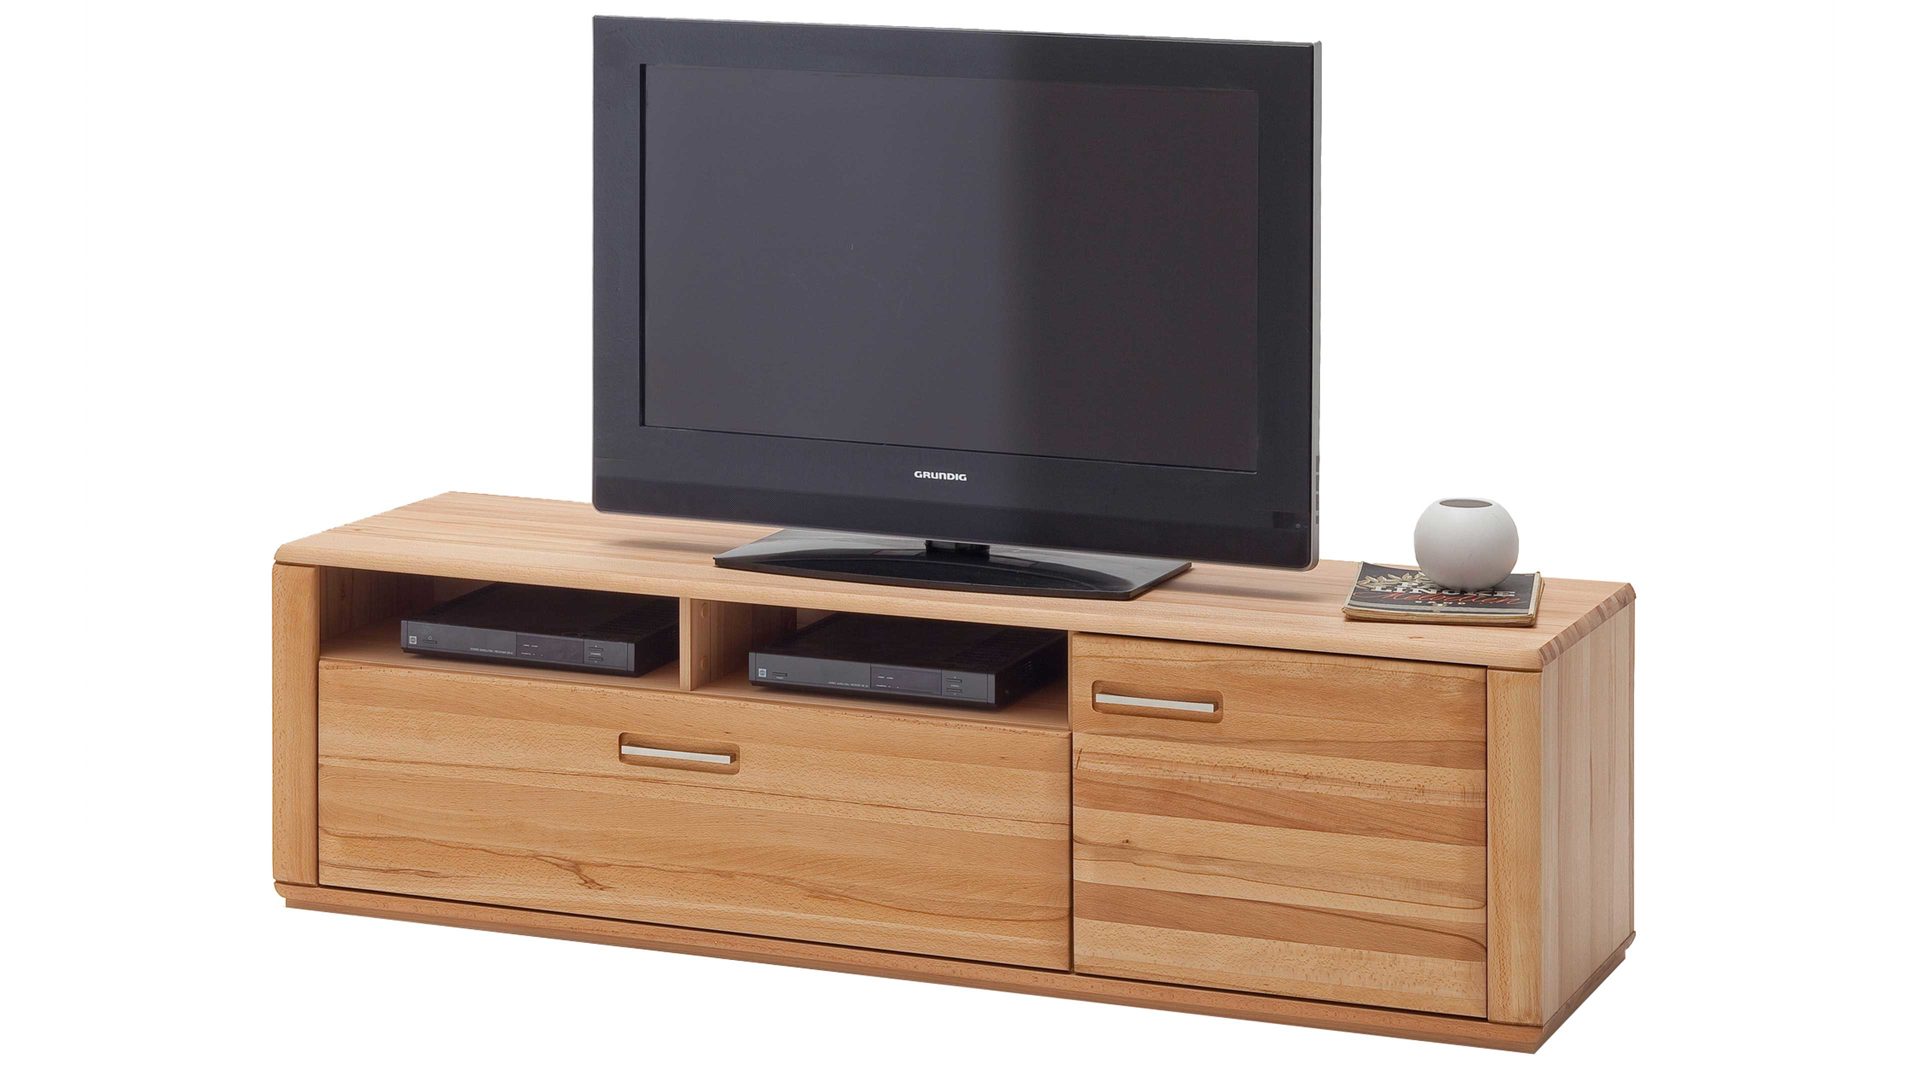 Medienmöbel Mca furniture aus Holz in Holzfarben Wohnprogramm Sena - TV-Element bzw. TV-Möbel  geölte Kernbuche – eine Tür, eine Schublade, zwei offene Fächer